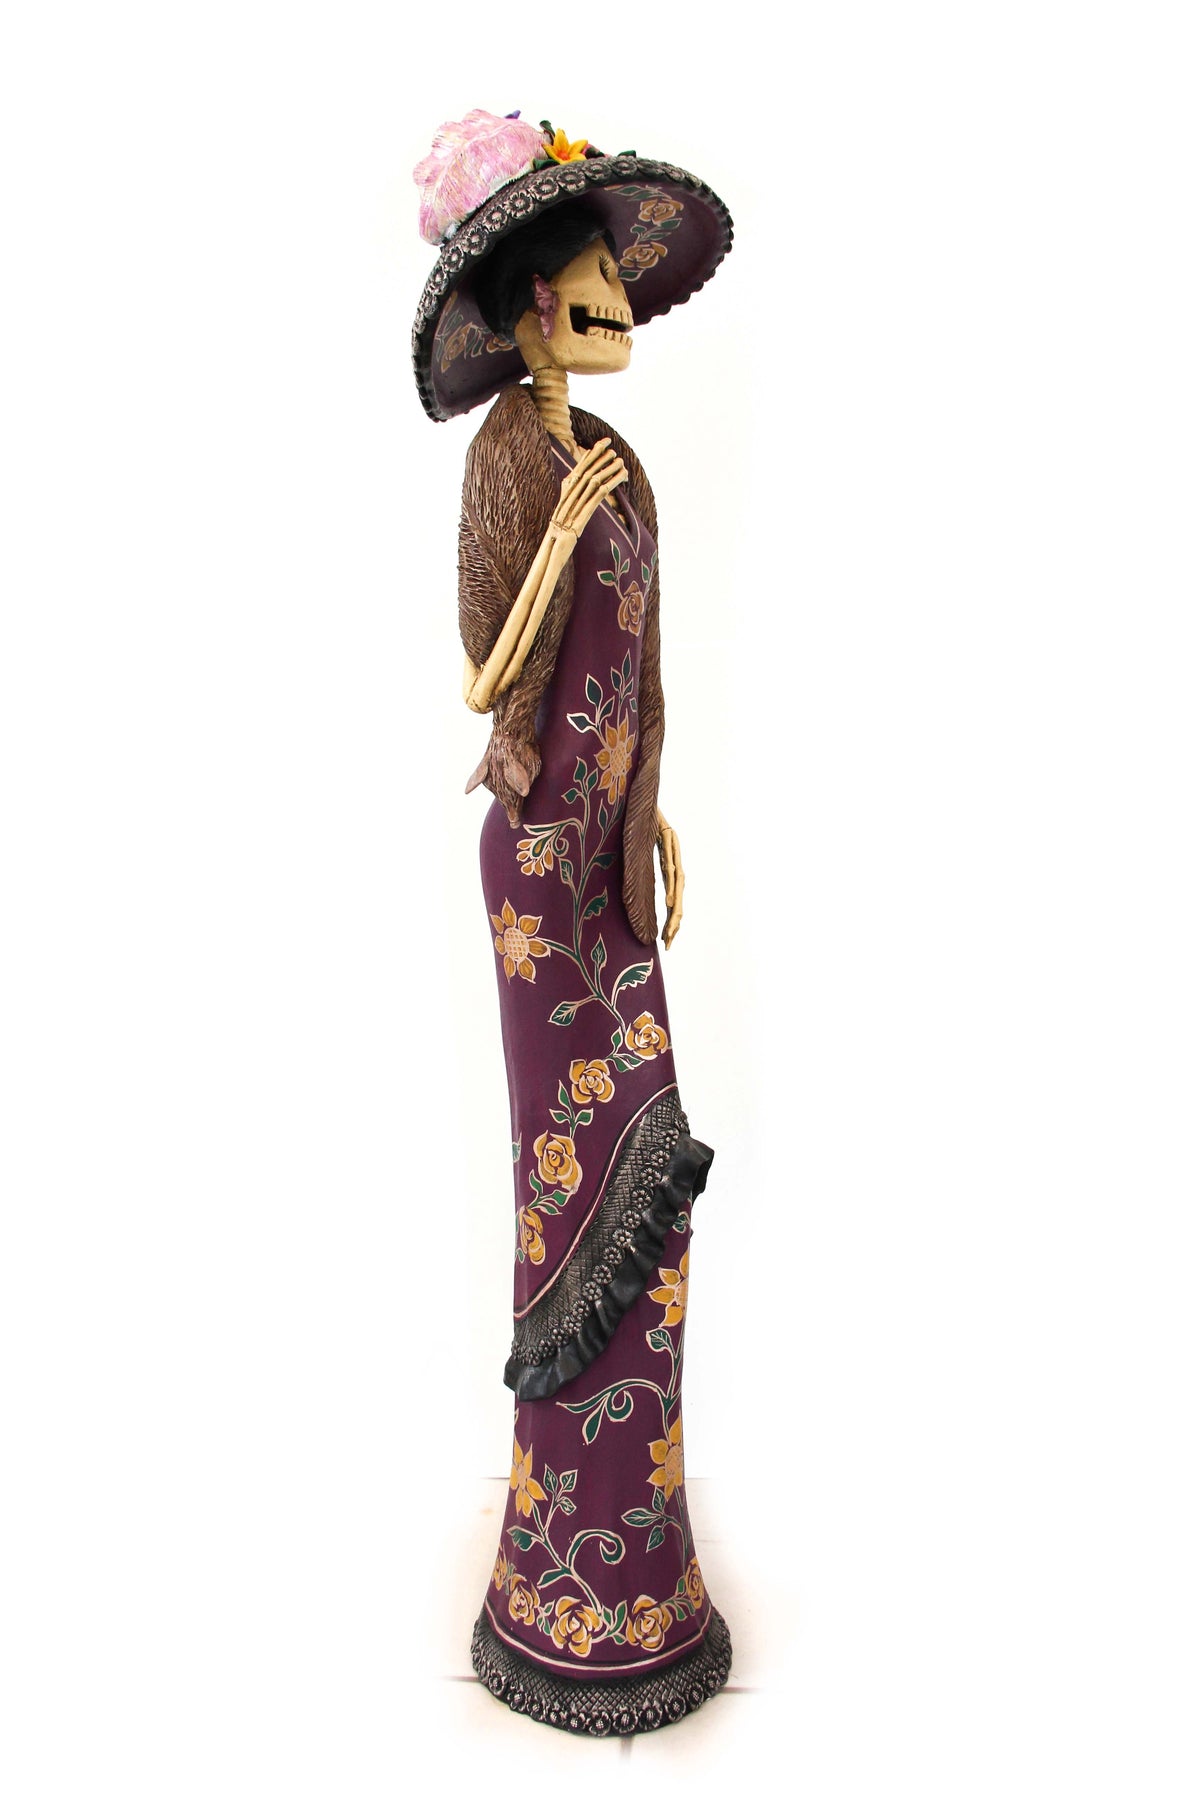 Gran Catrina de Frida con zorro - 103 cm. 41 in.